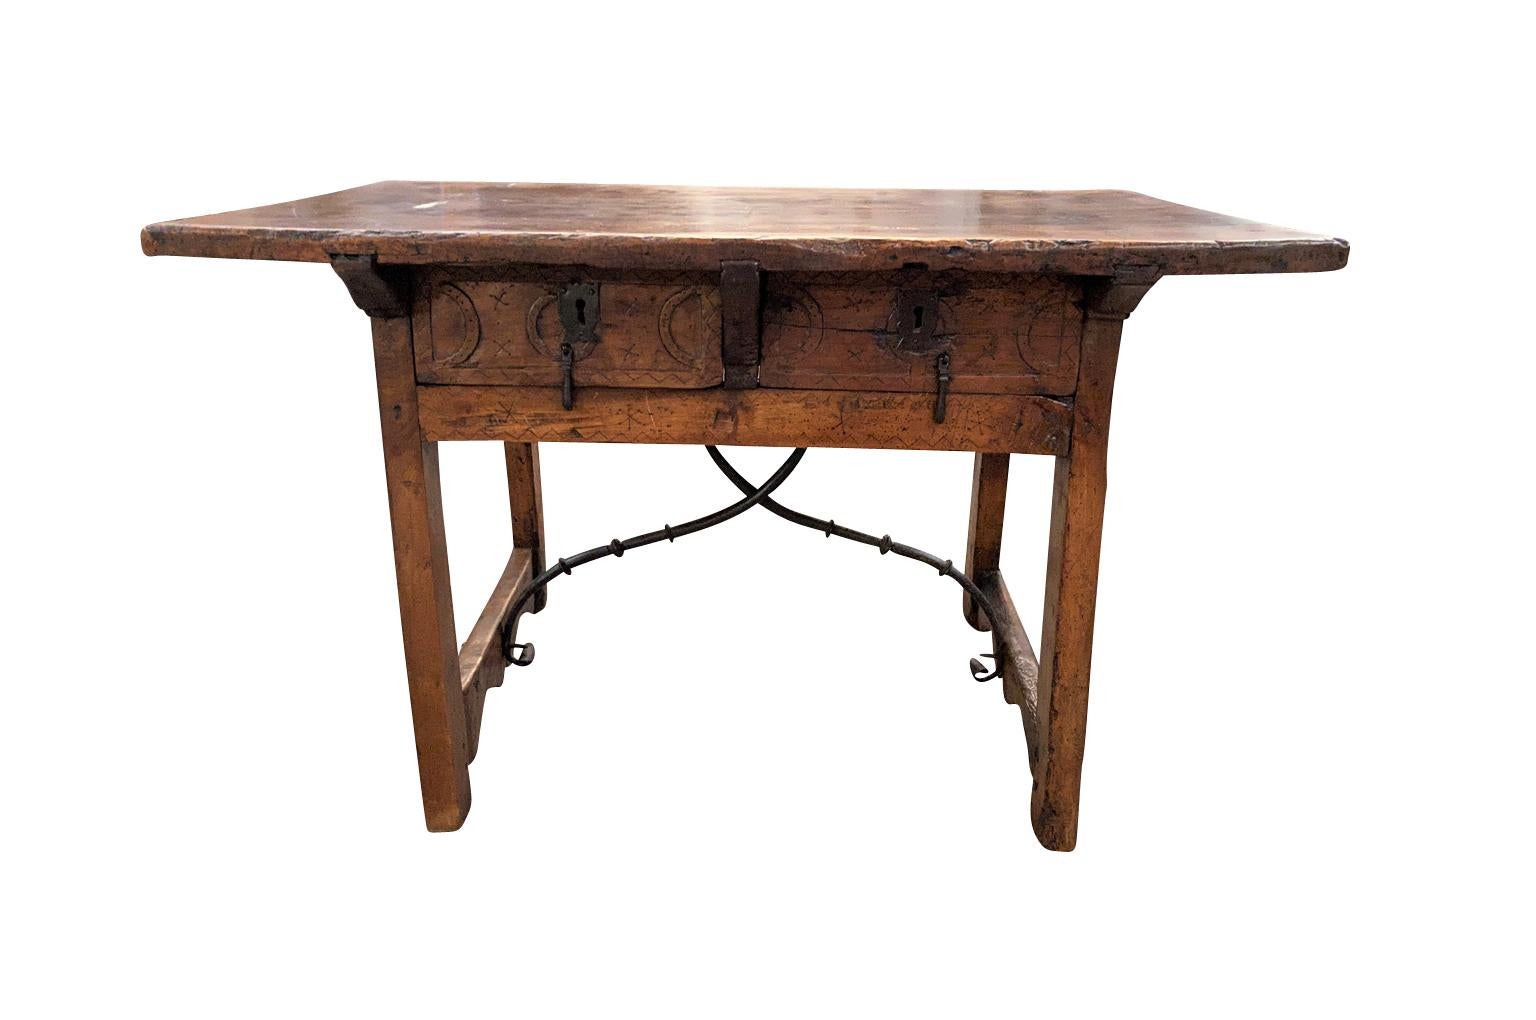 Très belle table d'appoint du 17e siècle provenant de la région catalane de l'Espagne.  Magnifiquement construit en noyer avec un plateau en bois massif, 2 tiroirs et des châssis en fer forgé à la main.  Excellente patine - riche et lumineuse.